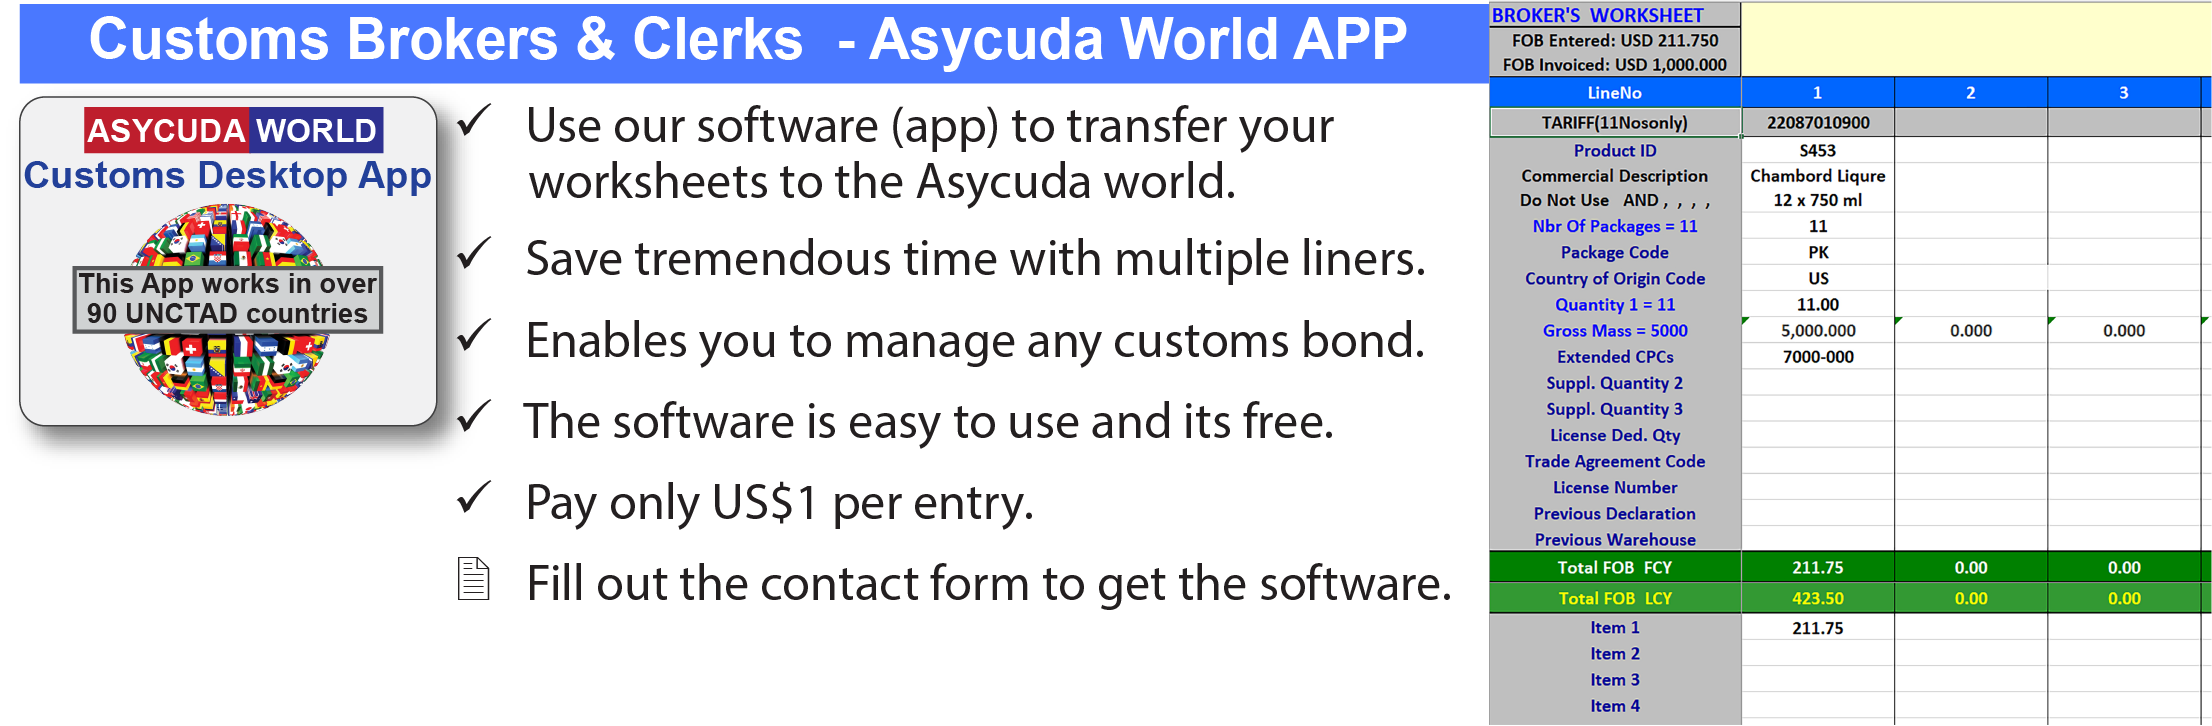 asycuda world ii